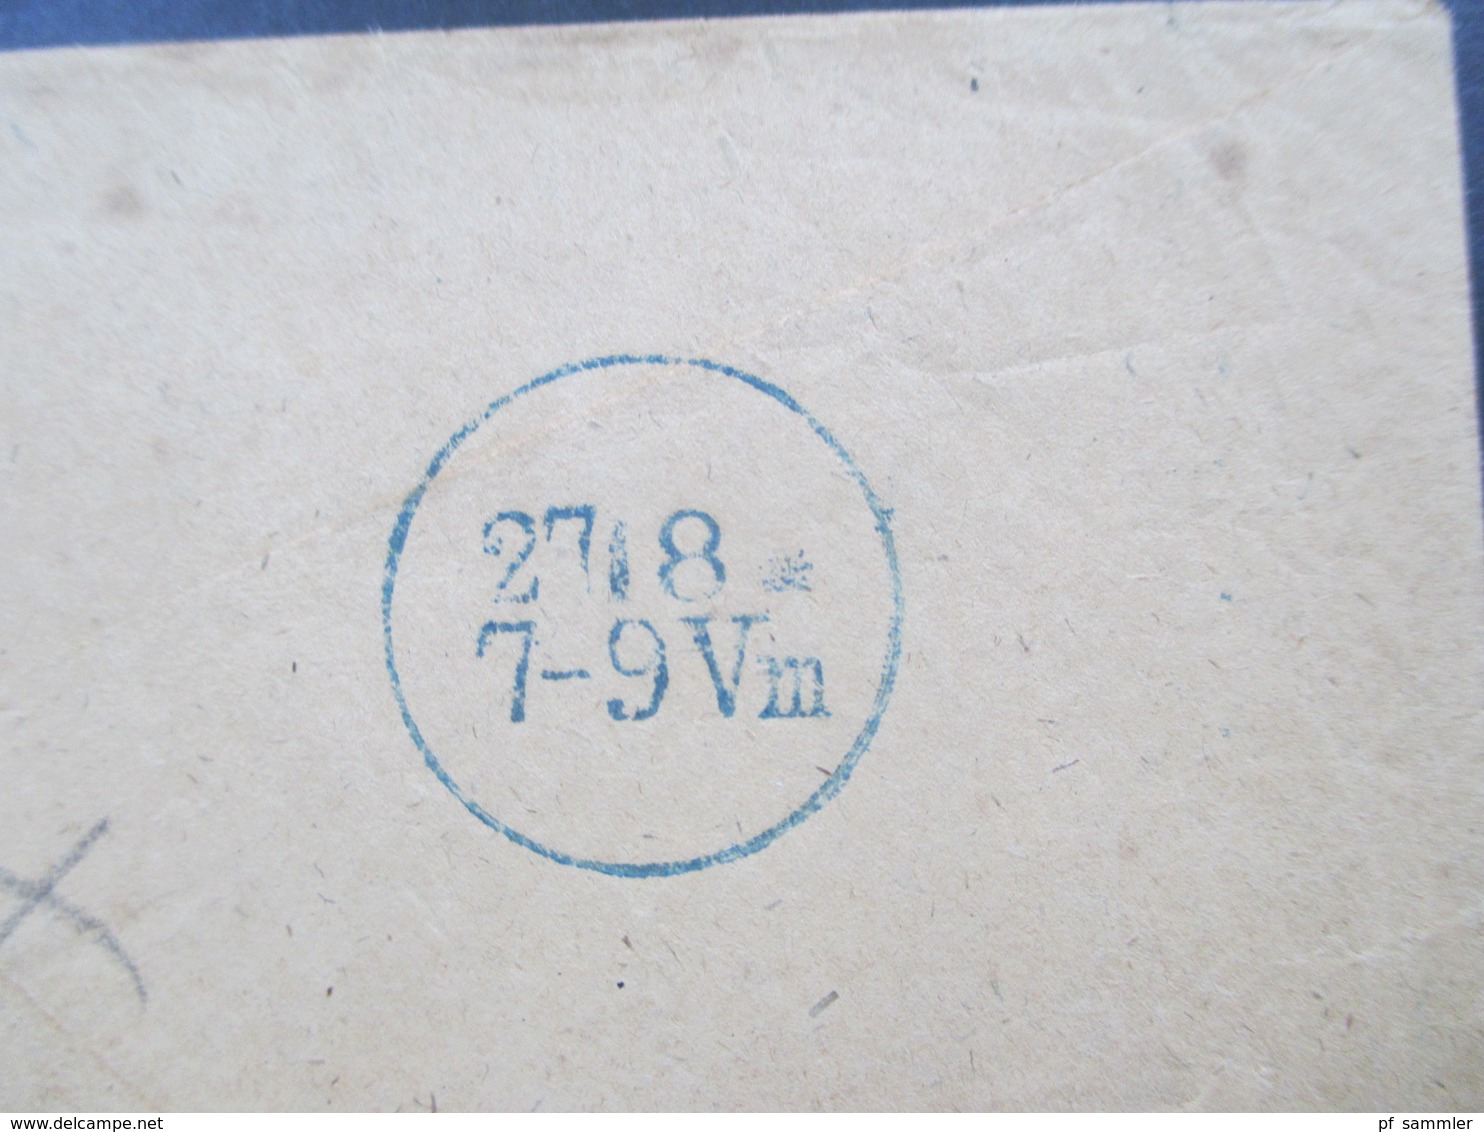 AD / Vorphila Preussen 1863 Westpommern Rahmenstempel R2 Zehden Bartaxe Mit Rot Und Blaustift - Briefe U. Dokumente